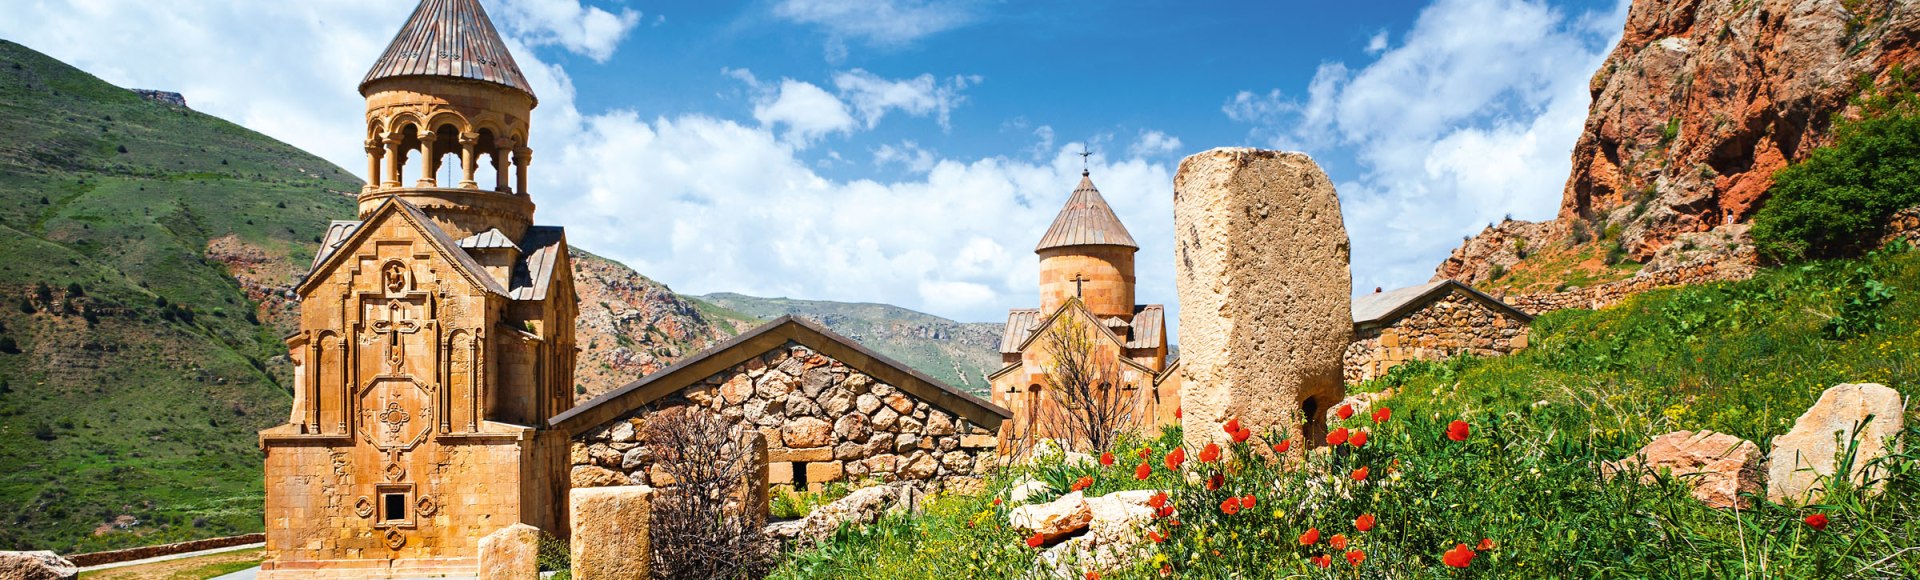 Gut versteckt hoch oben in einem Talschluss liegt das Kloster Norawank in Armenien, © monkographic – stock.adobe.com